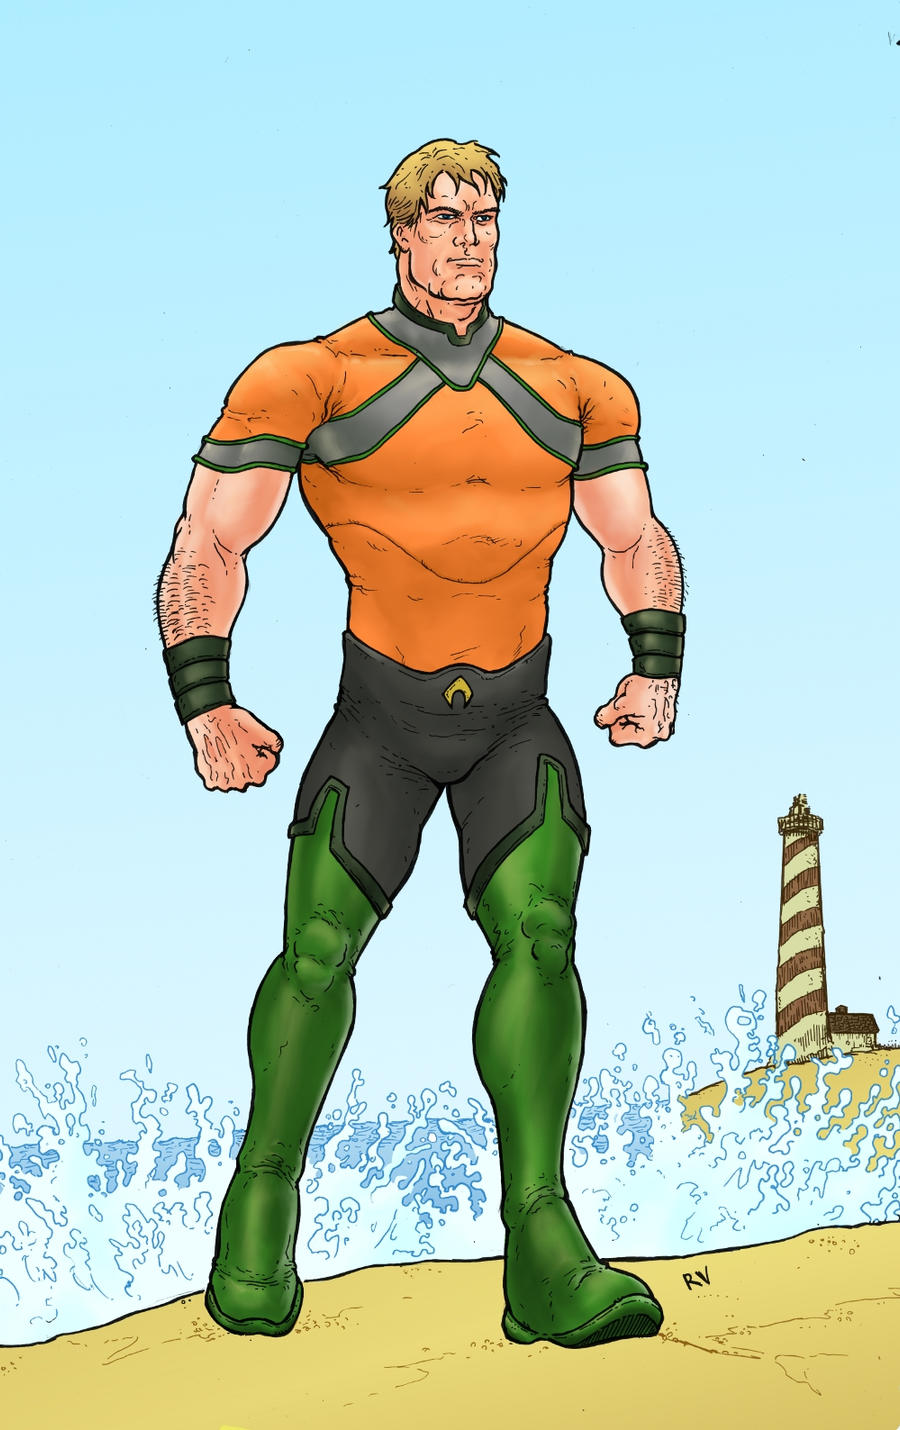 Aquaman.